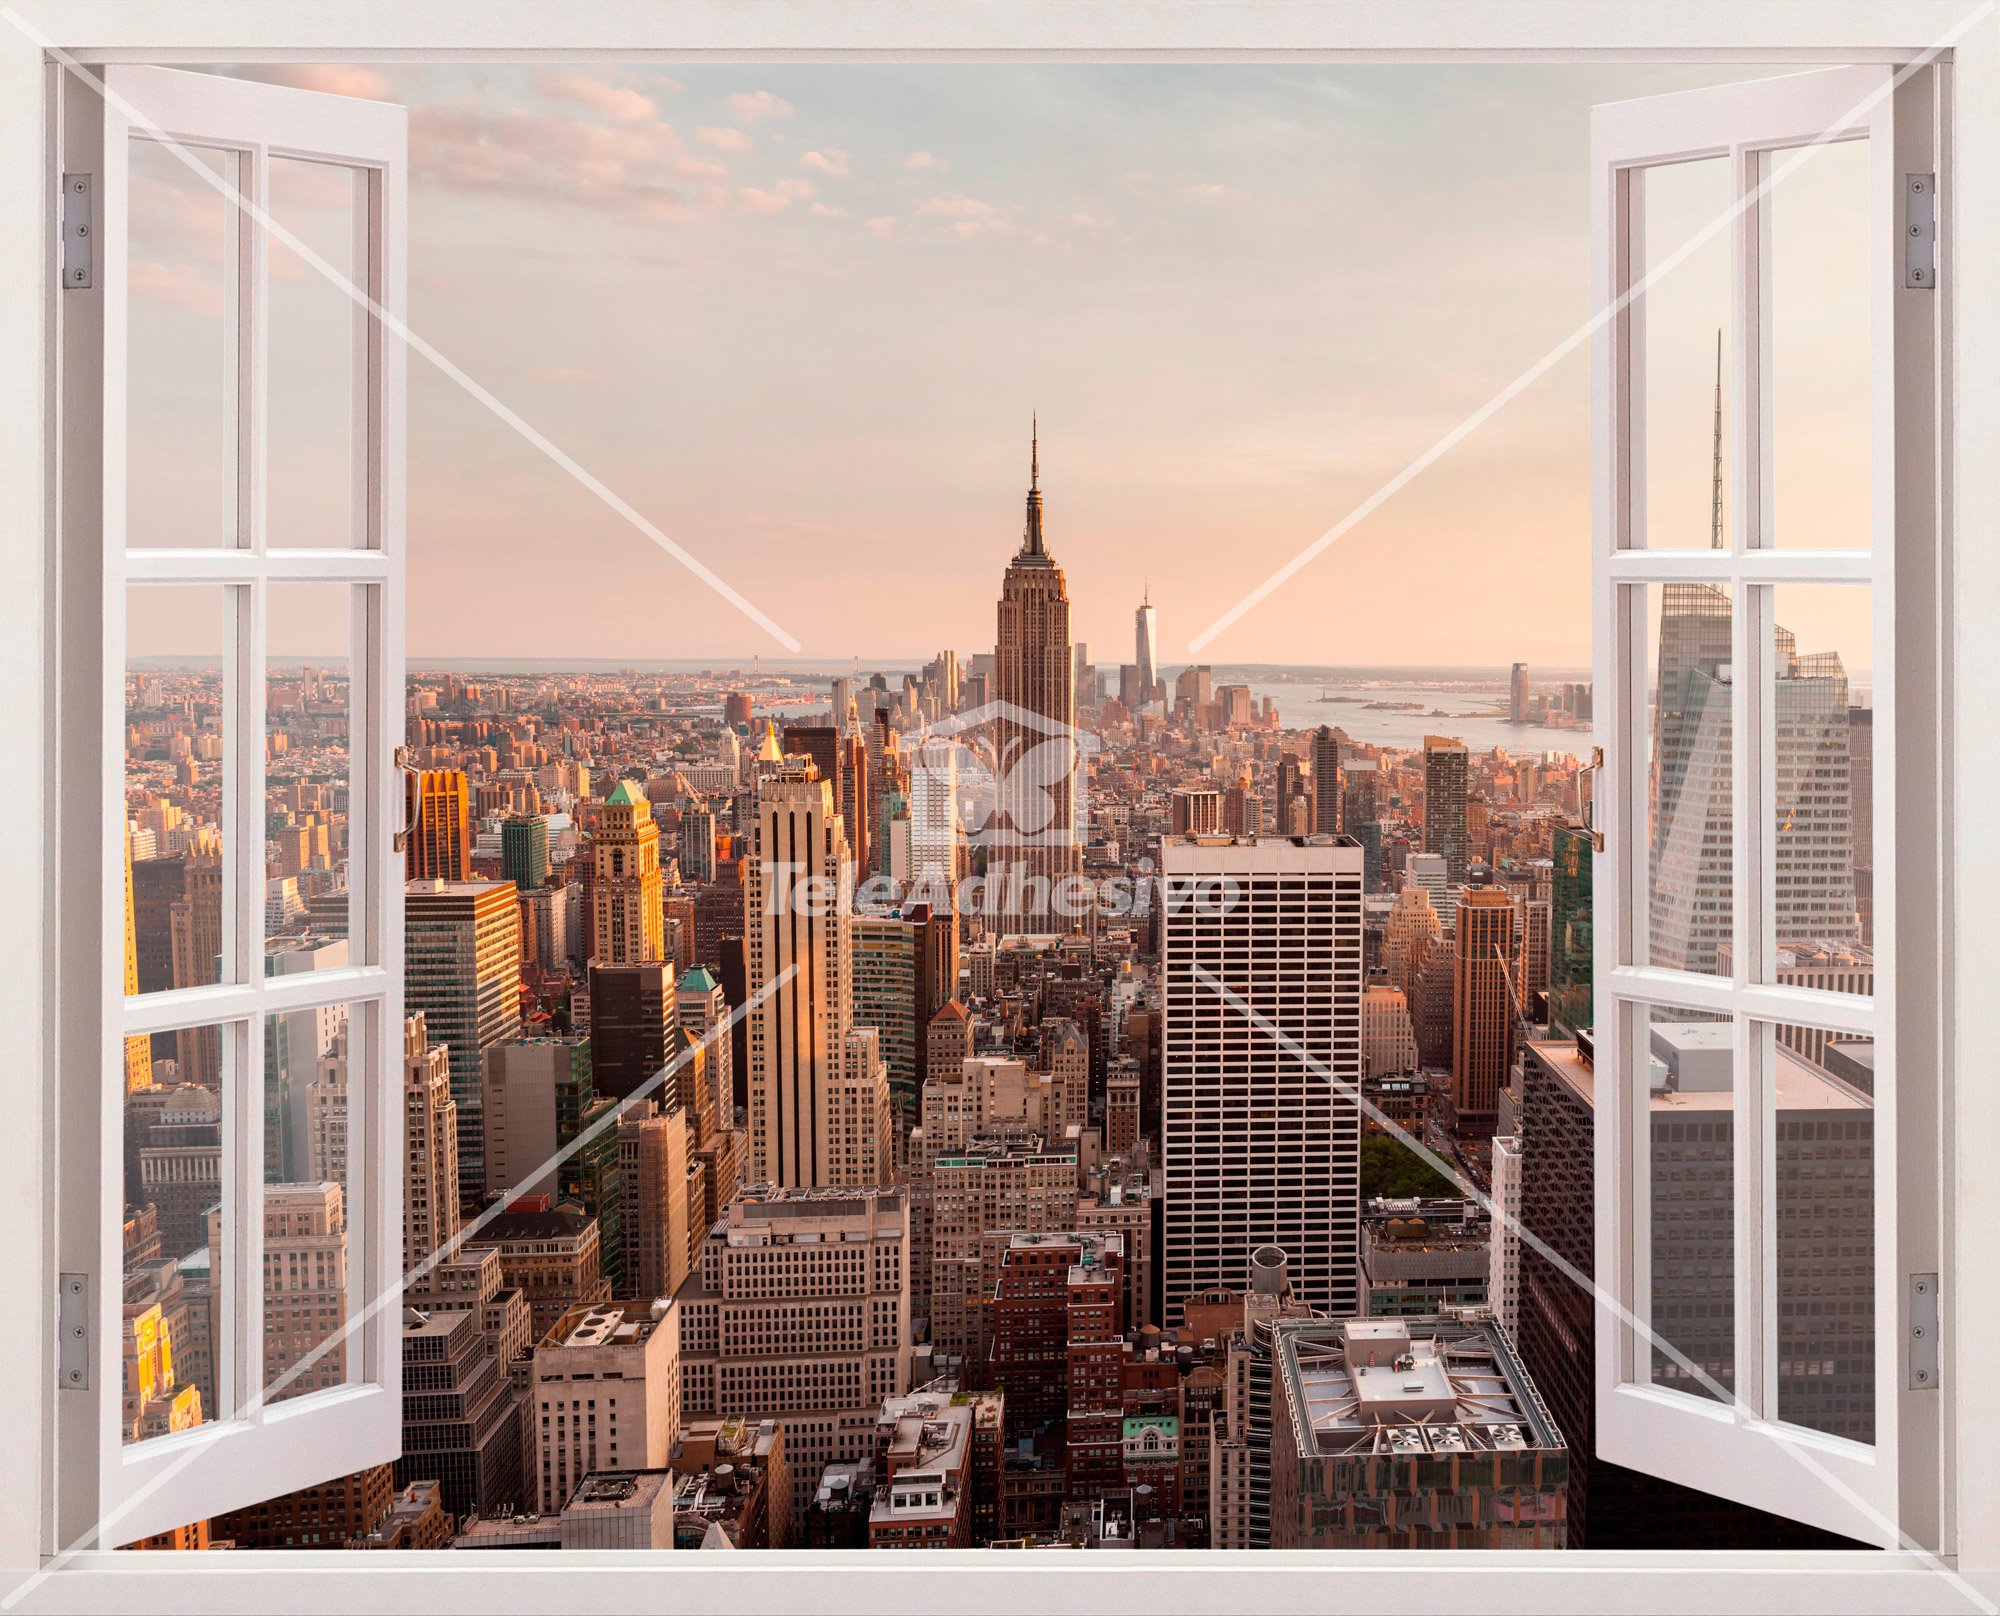 Wall Stickers: NYC business skyline